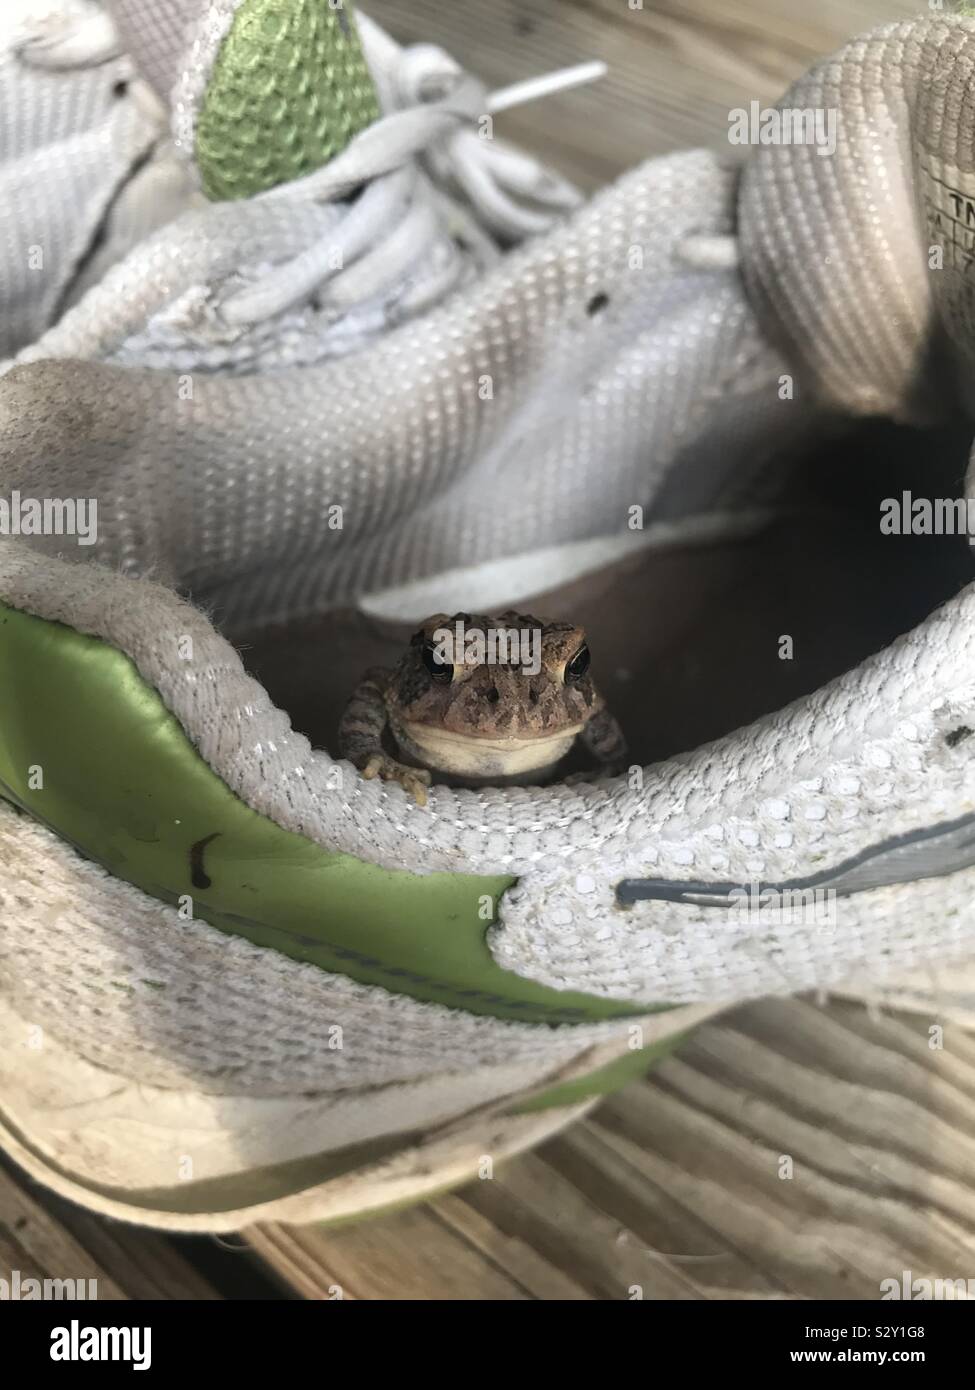 Süße, kleine Kröte heraus hängen in einem stinkenden Gartenarbeit Schuh Stockfoto